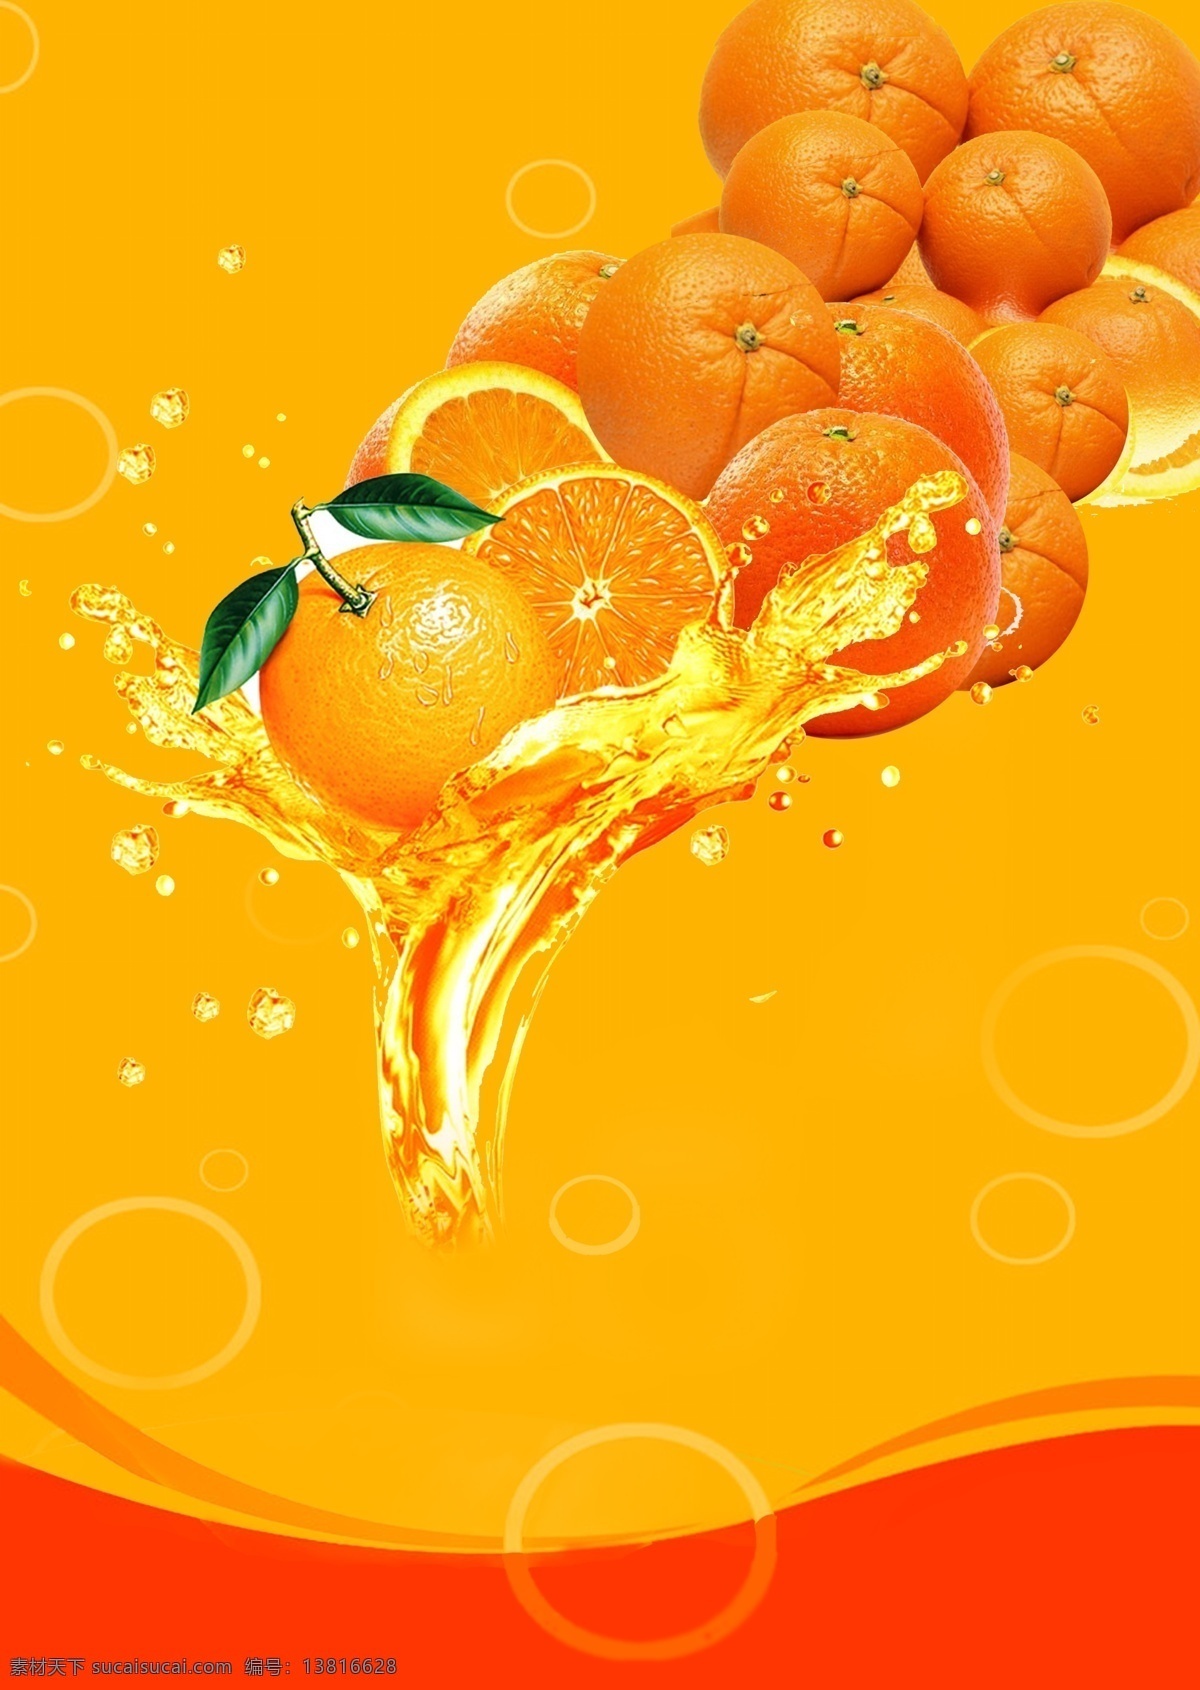 鲜橙饮料海报 鲜橙 橙汁 饮料招贴 饮料 广告招贴 海报 广告设计模板 源文件